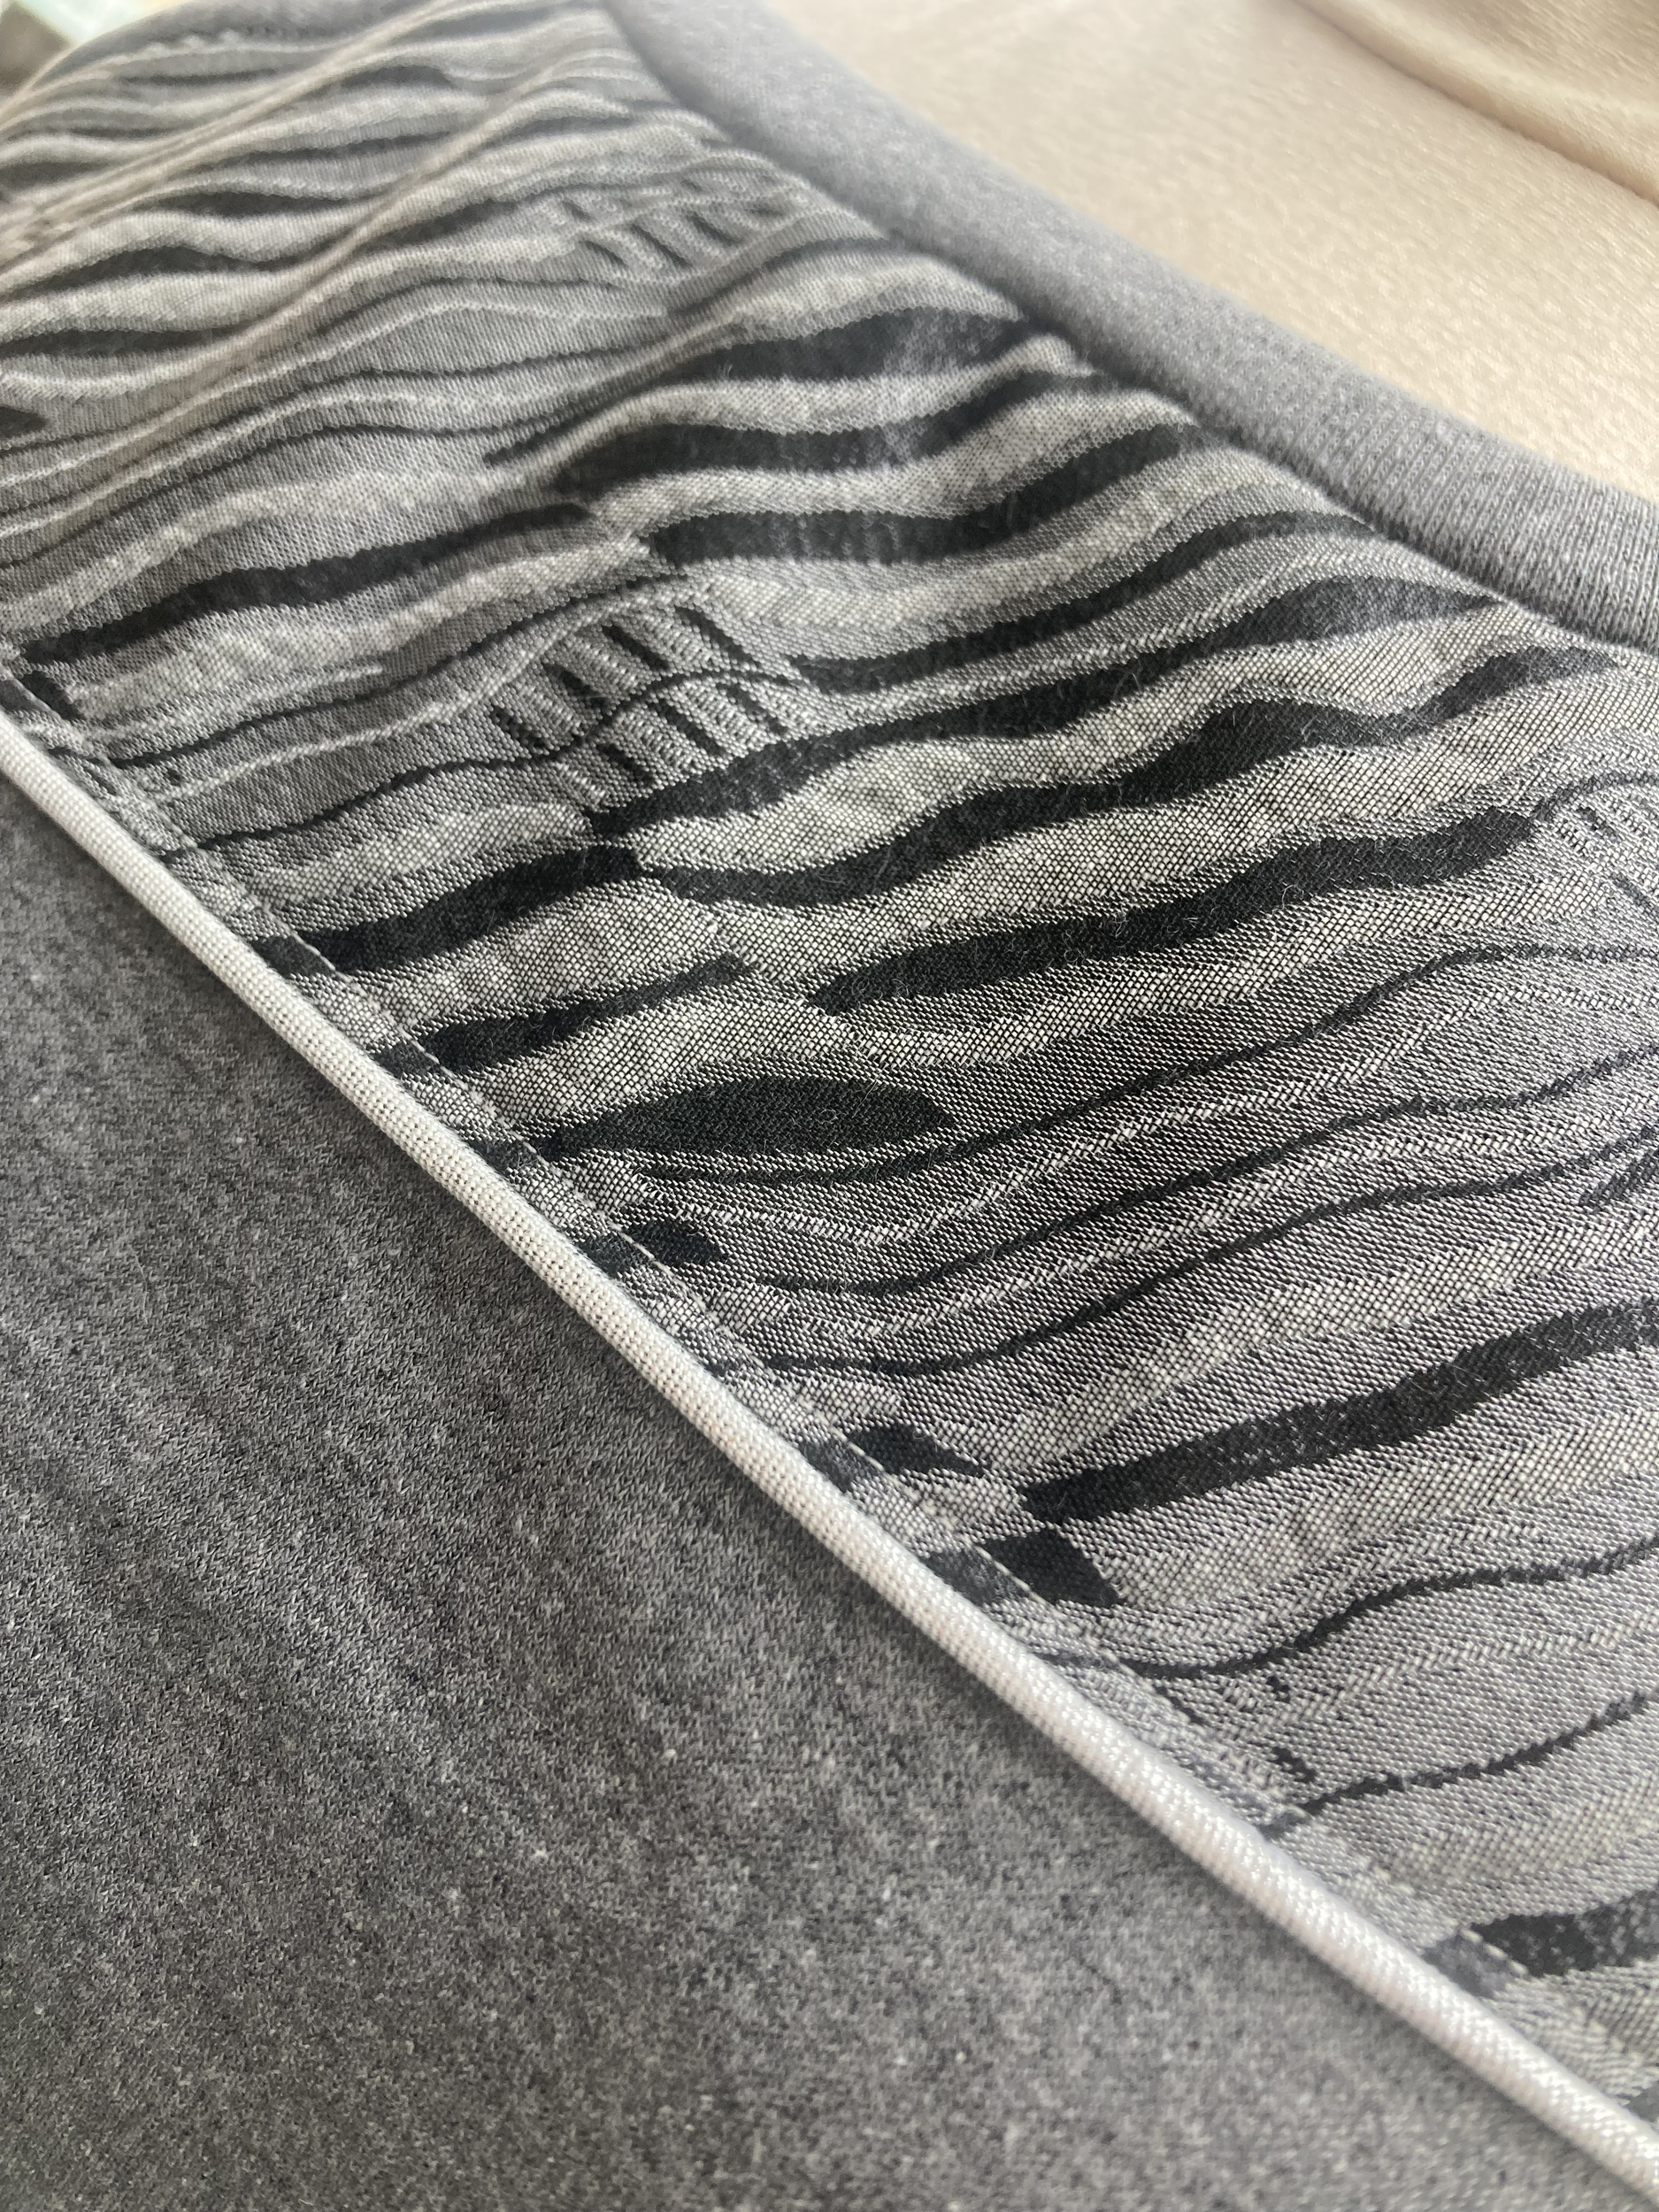 sweat coton recyclé gris foncéchiné et tissu géométrique français argenté femme artisanal fait main pièce unique créatrice (2)